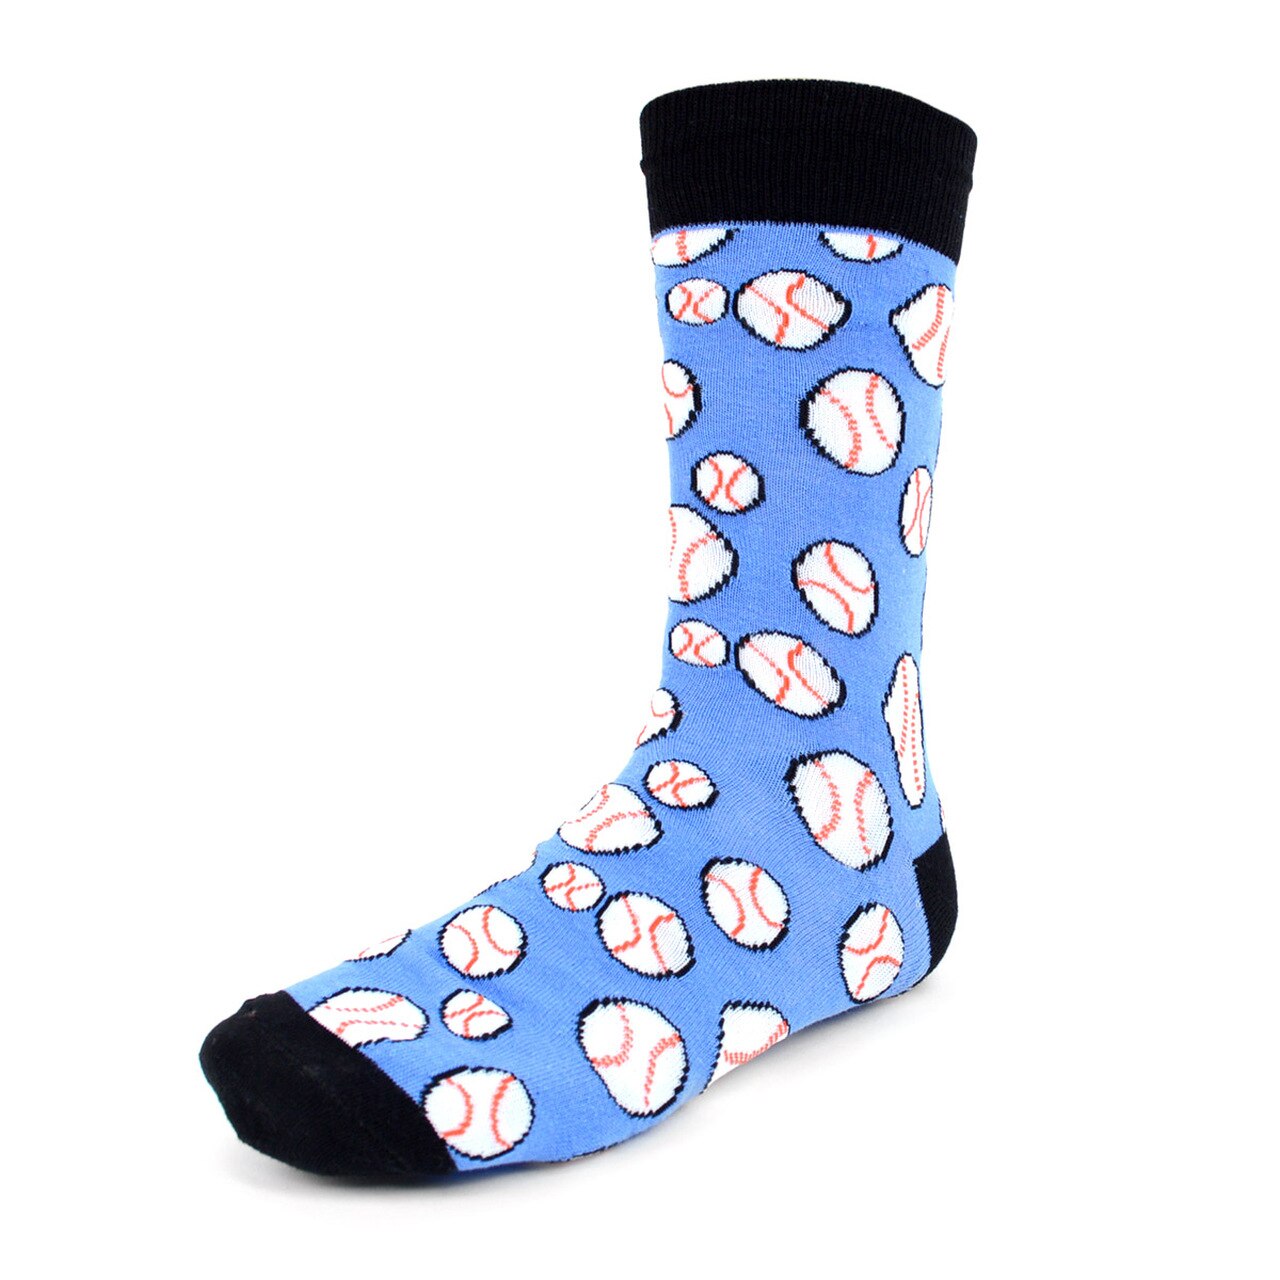 Men's Baseball Socks